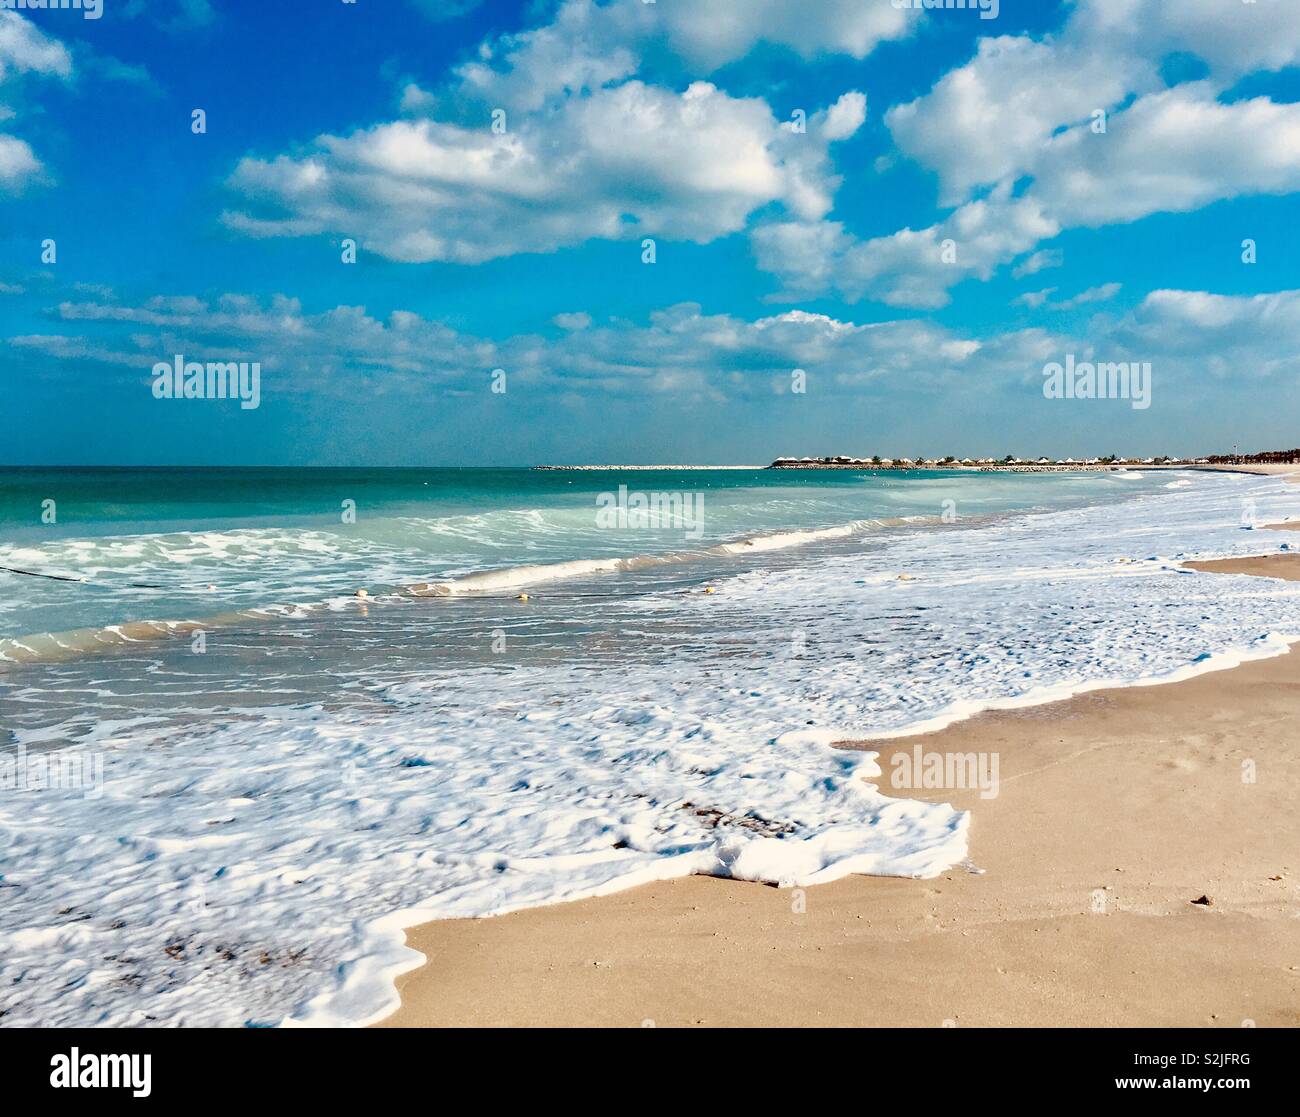 Beach at Al Hamra. U.A.E. Stock Photo